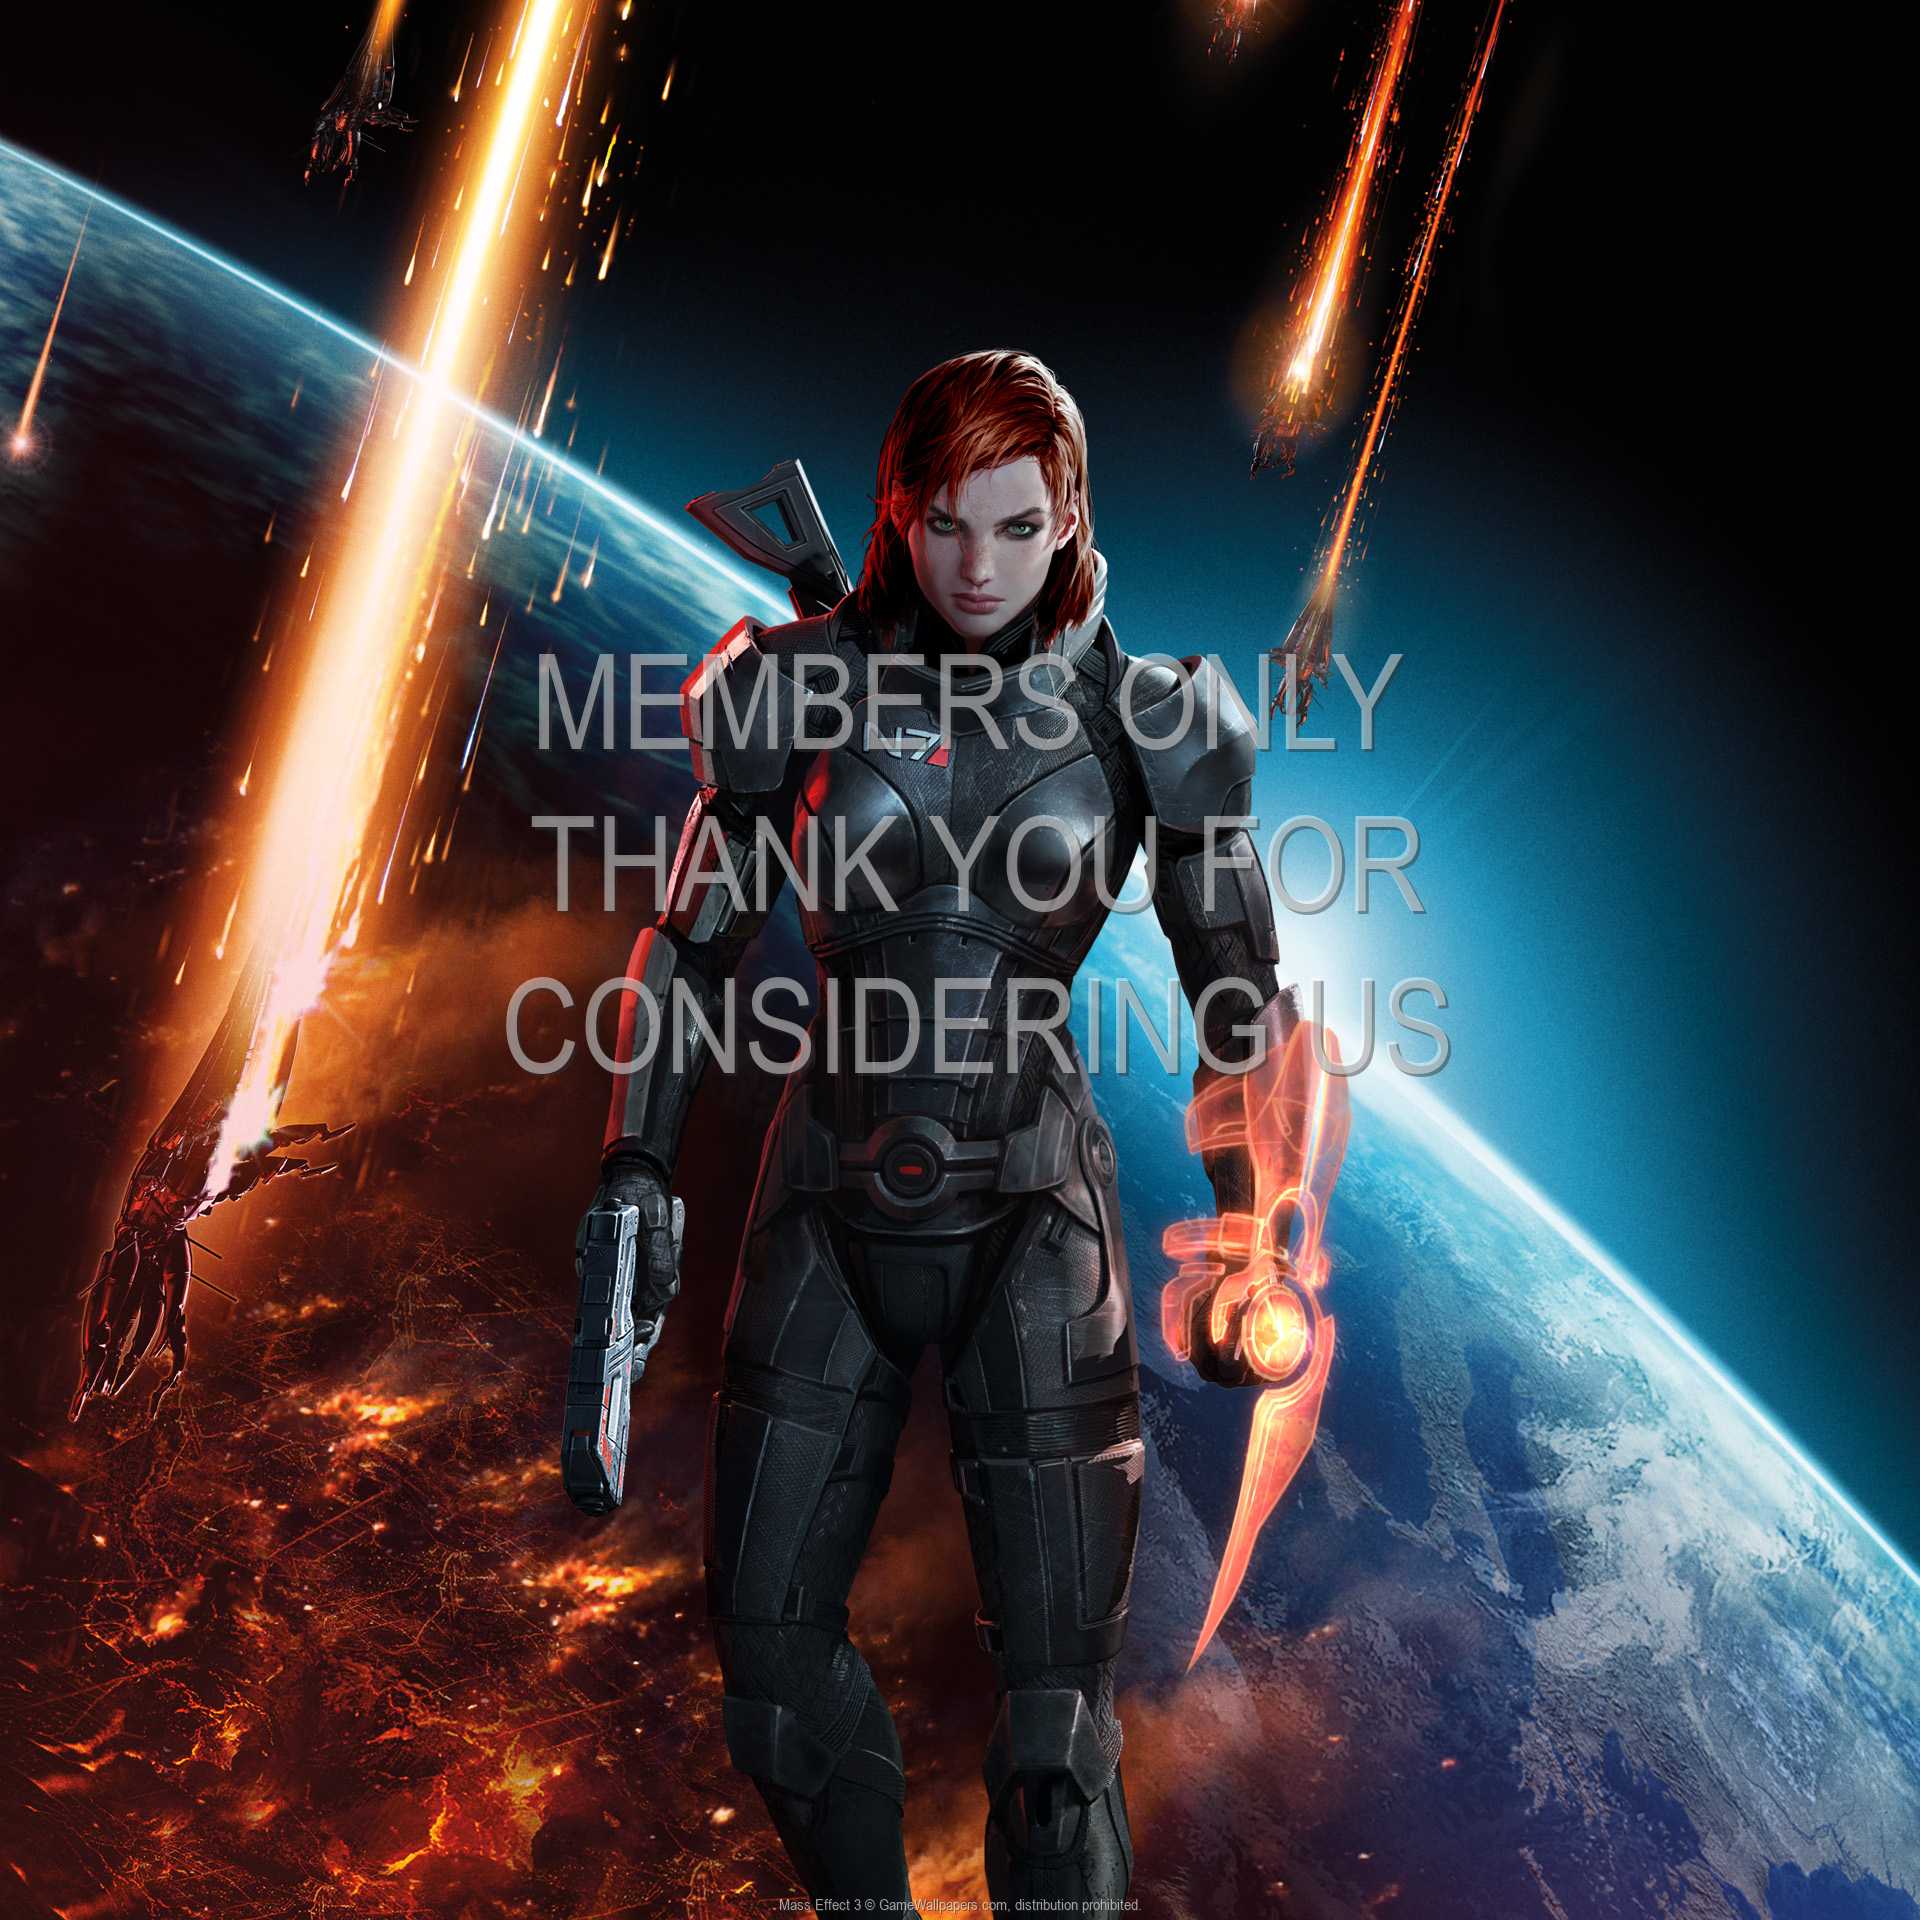 Mass Effect 3 1080p Horizontal Mobile fond d'cran 02